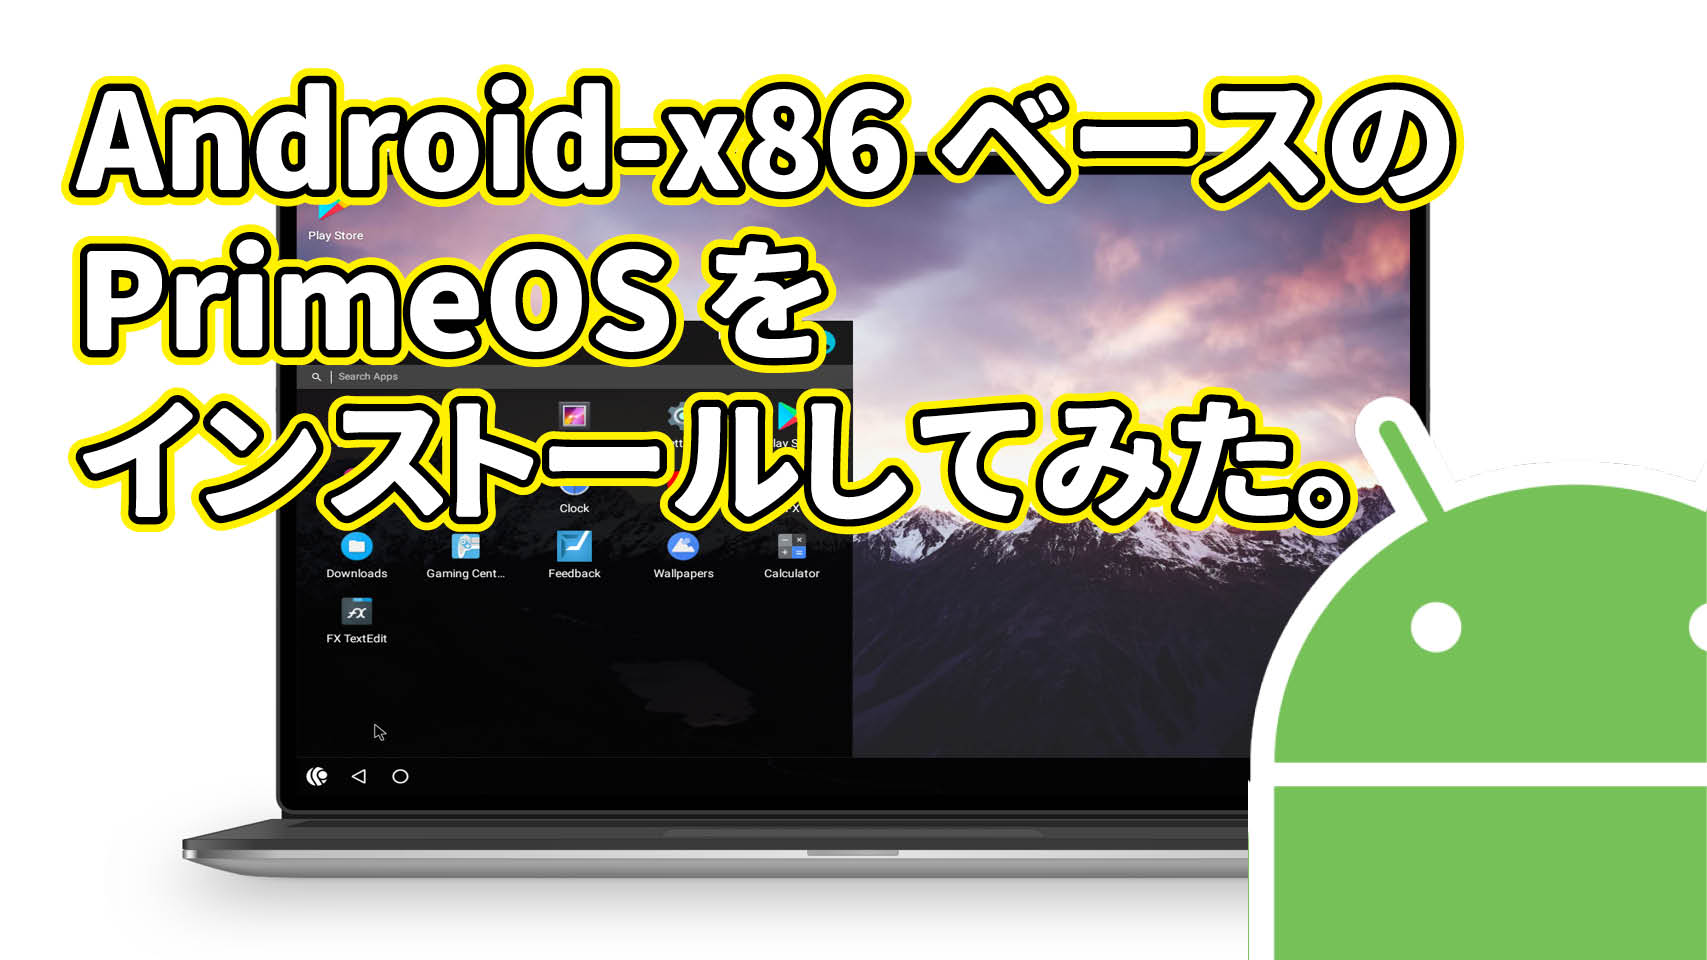 Android-x86 ベースの PrimeOS をインストールしてみた。